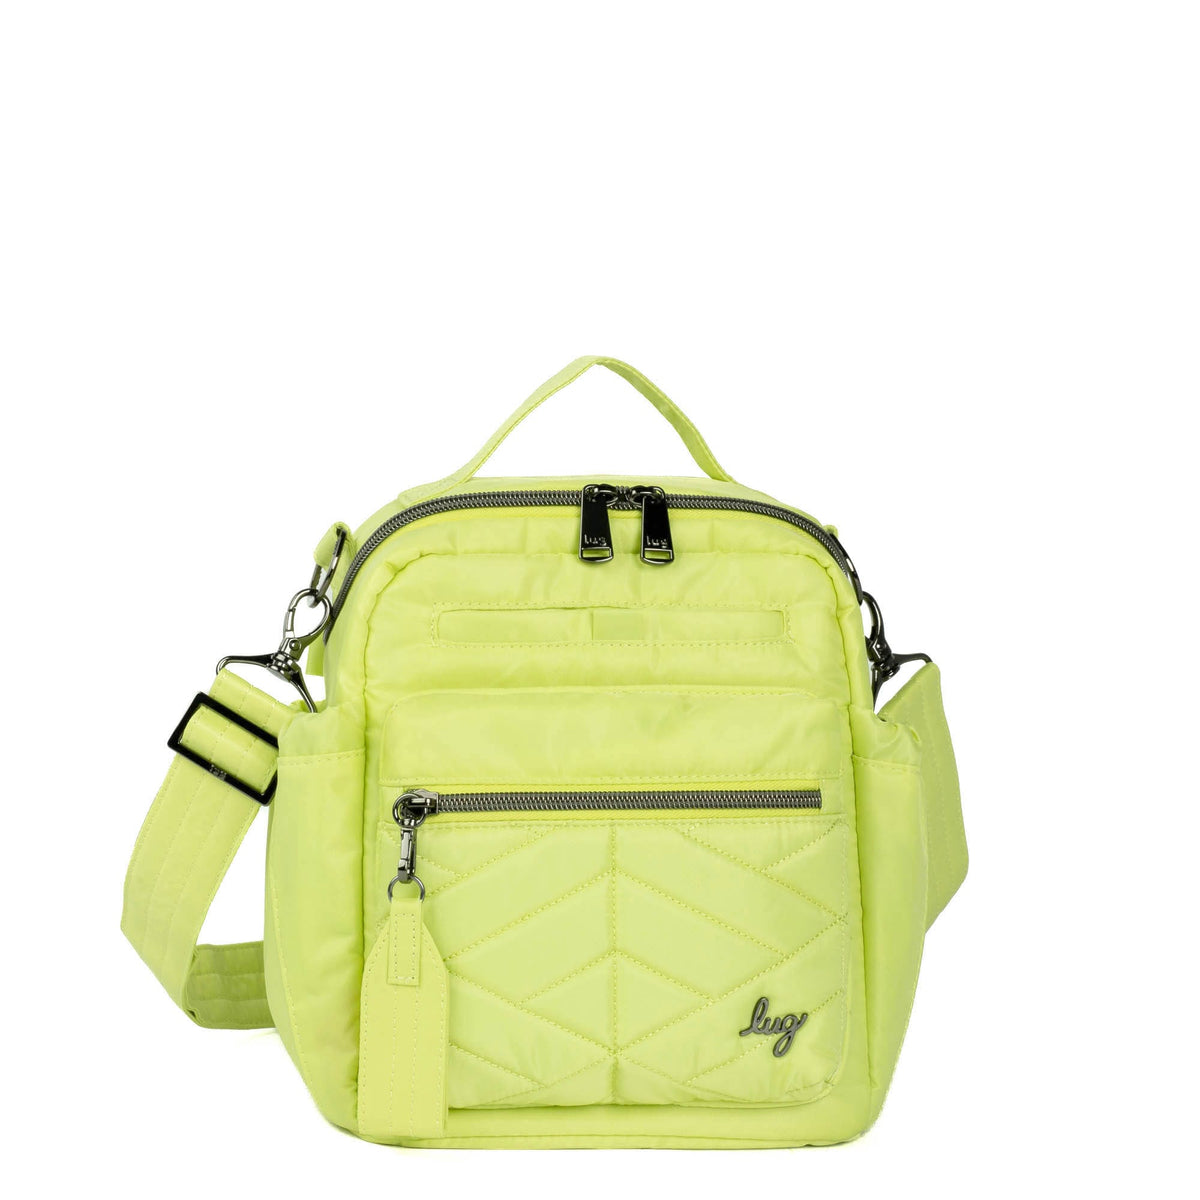 Grey monkey and flower shape canvas side backpack/shoulder bag